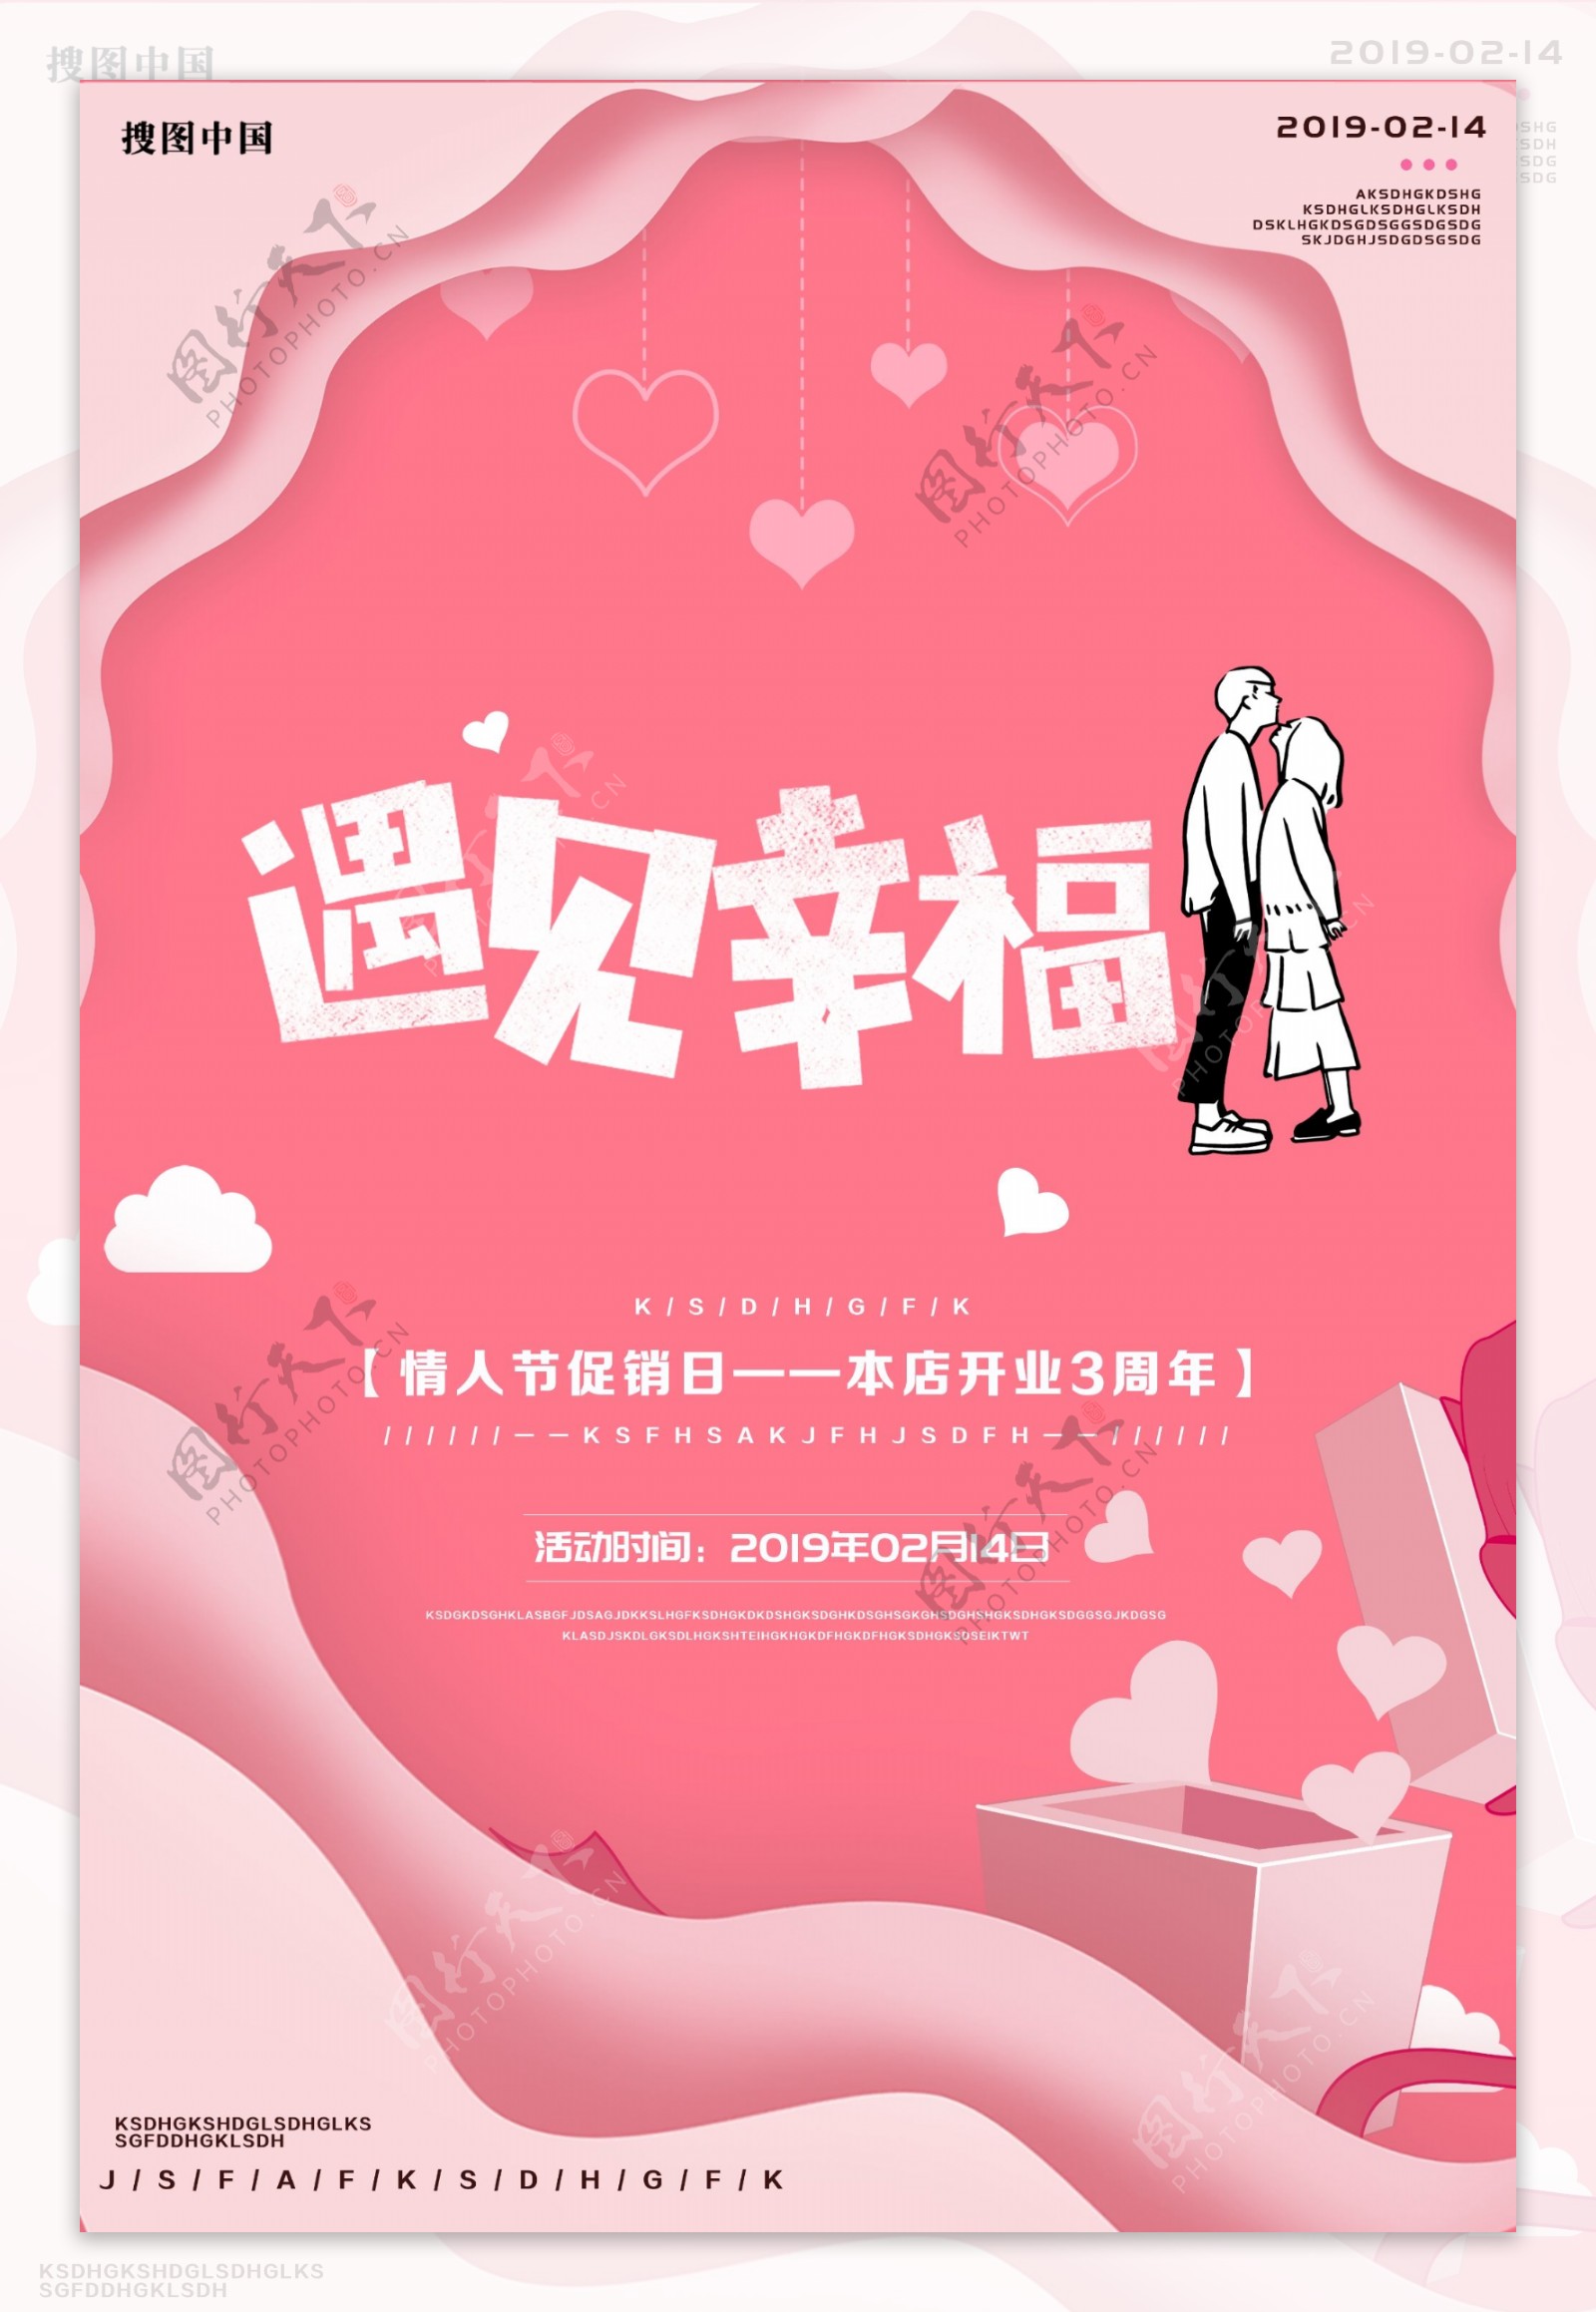 浪漫情人节宣传海报